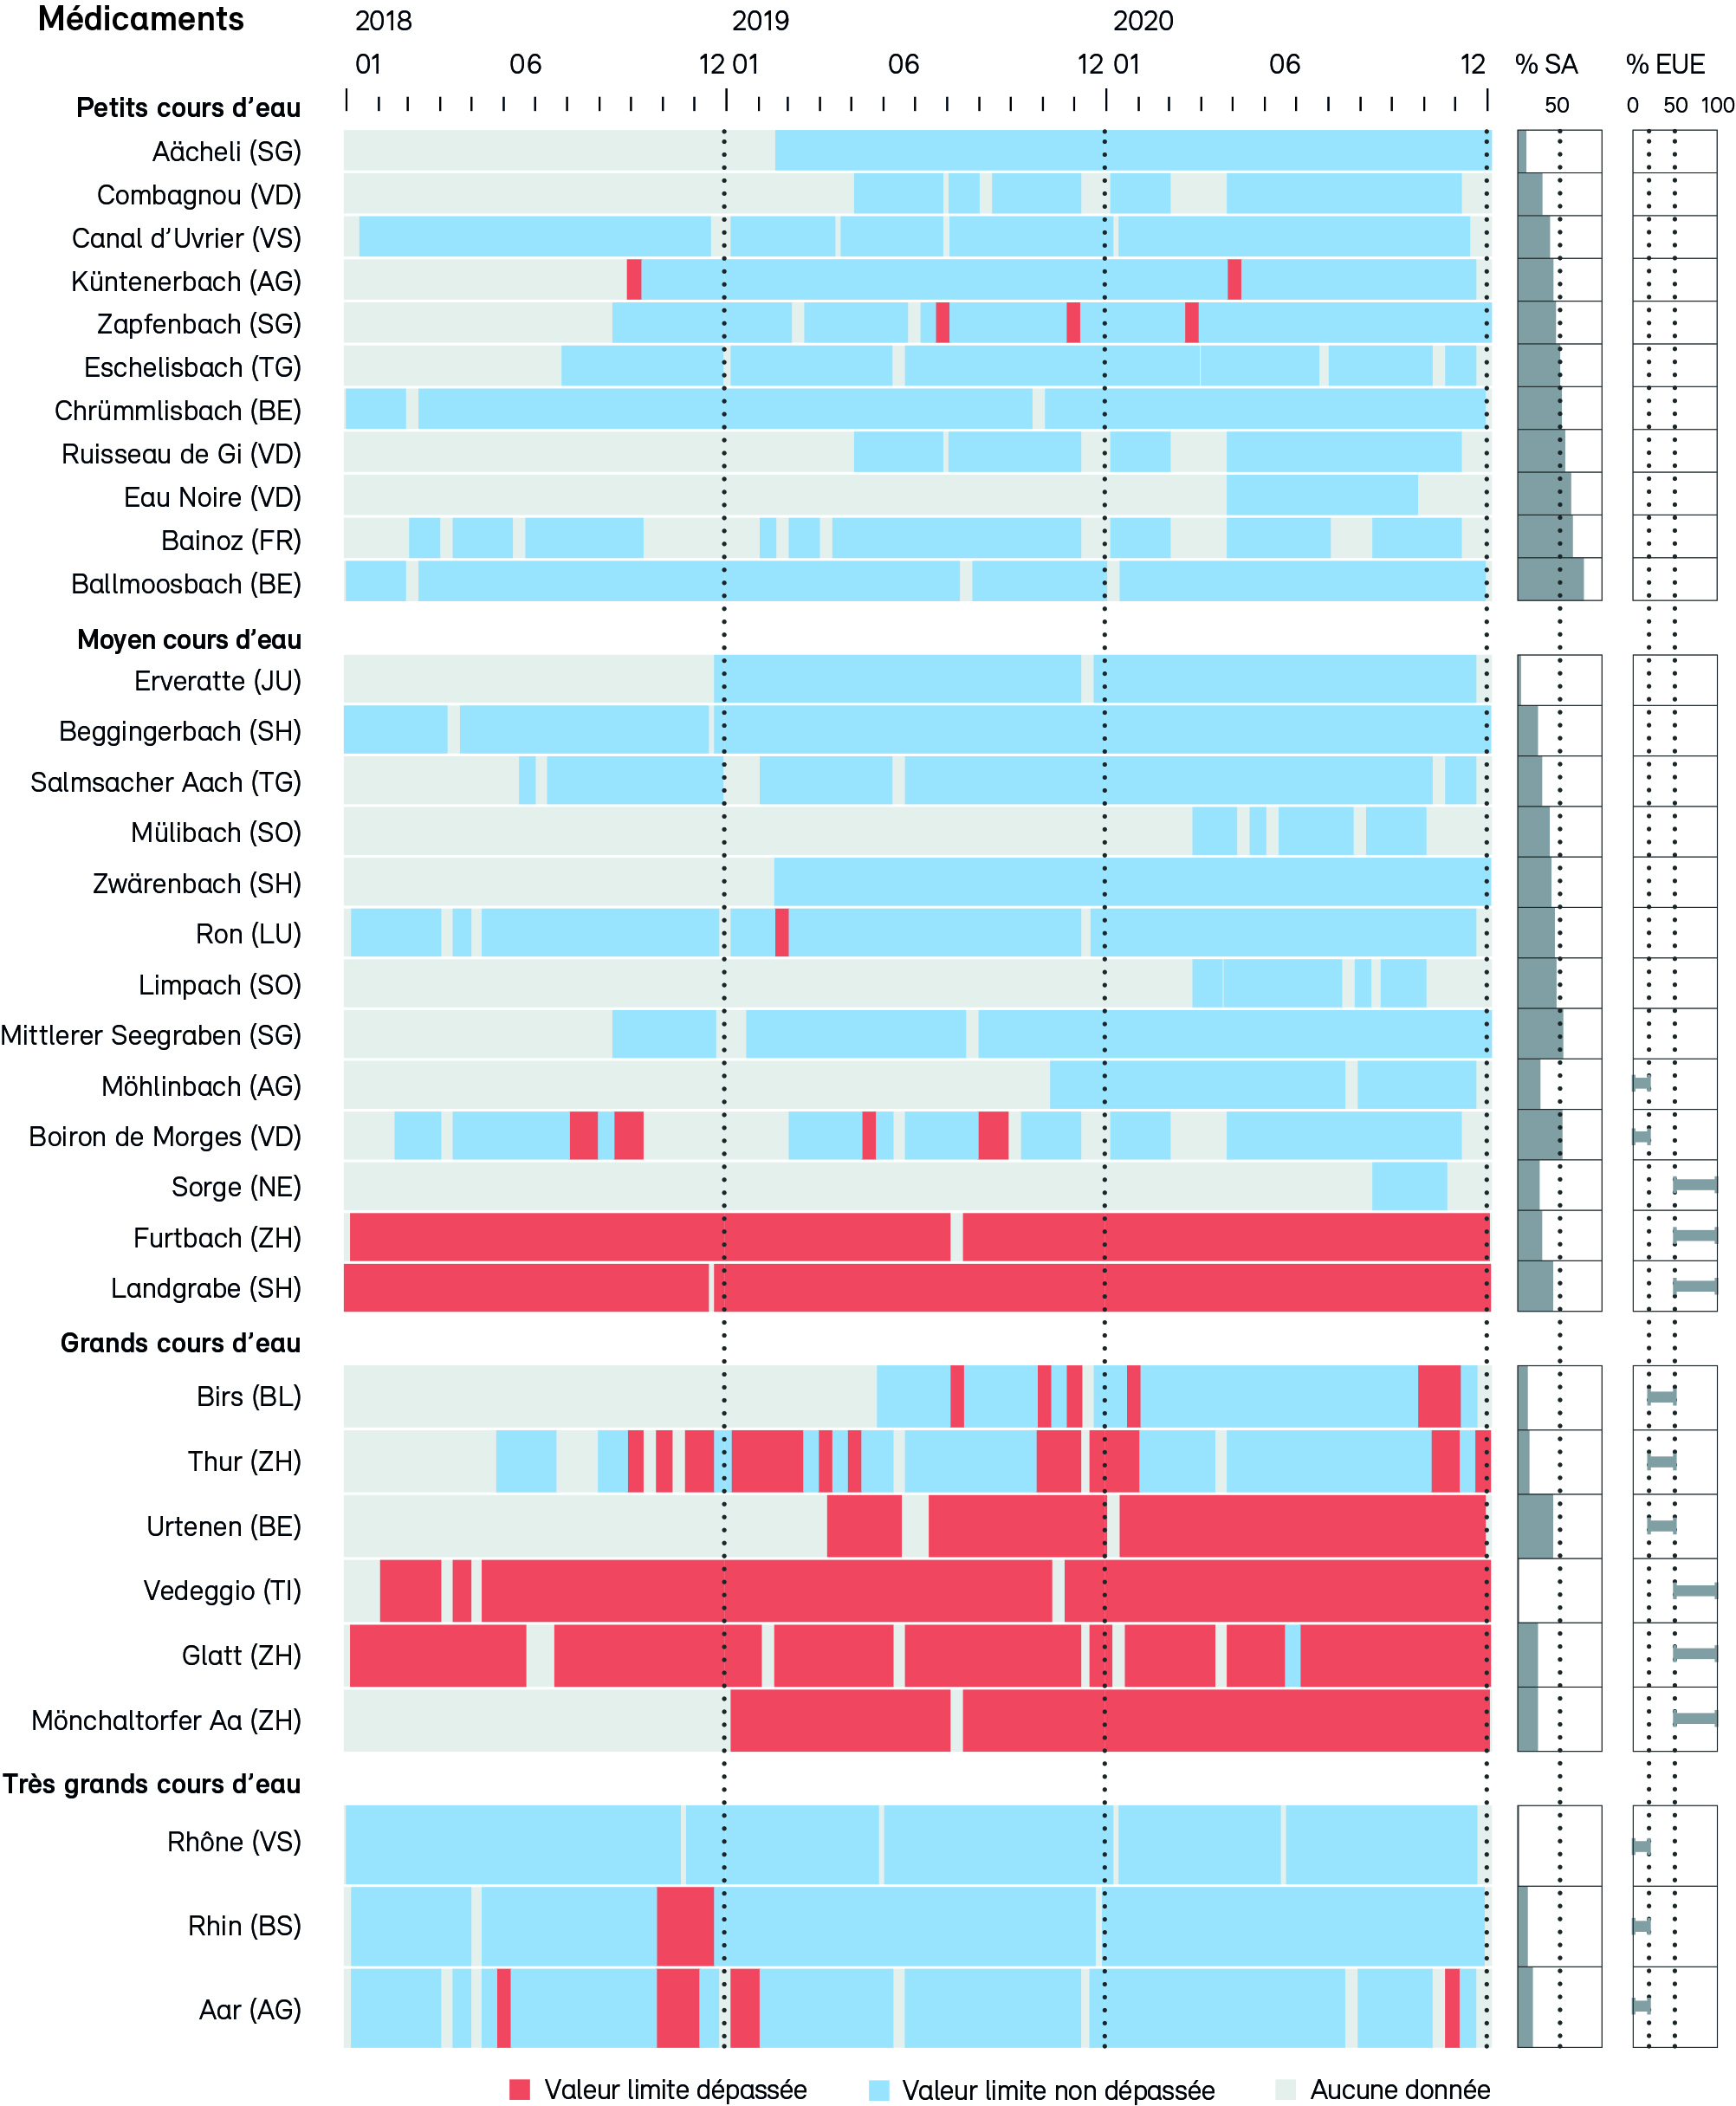 Graphiques chronologiques des dépassements de valeurs limites écotoxicologiques des médicaments mesurés